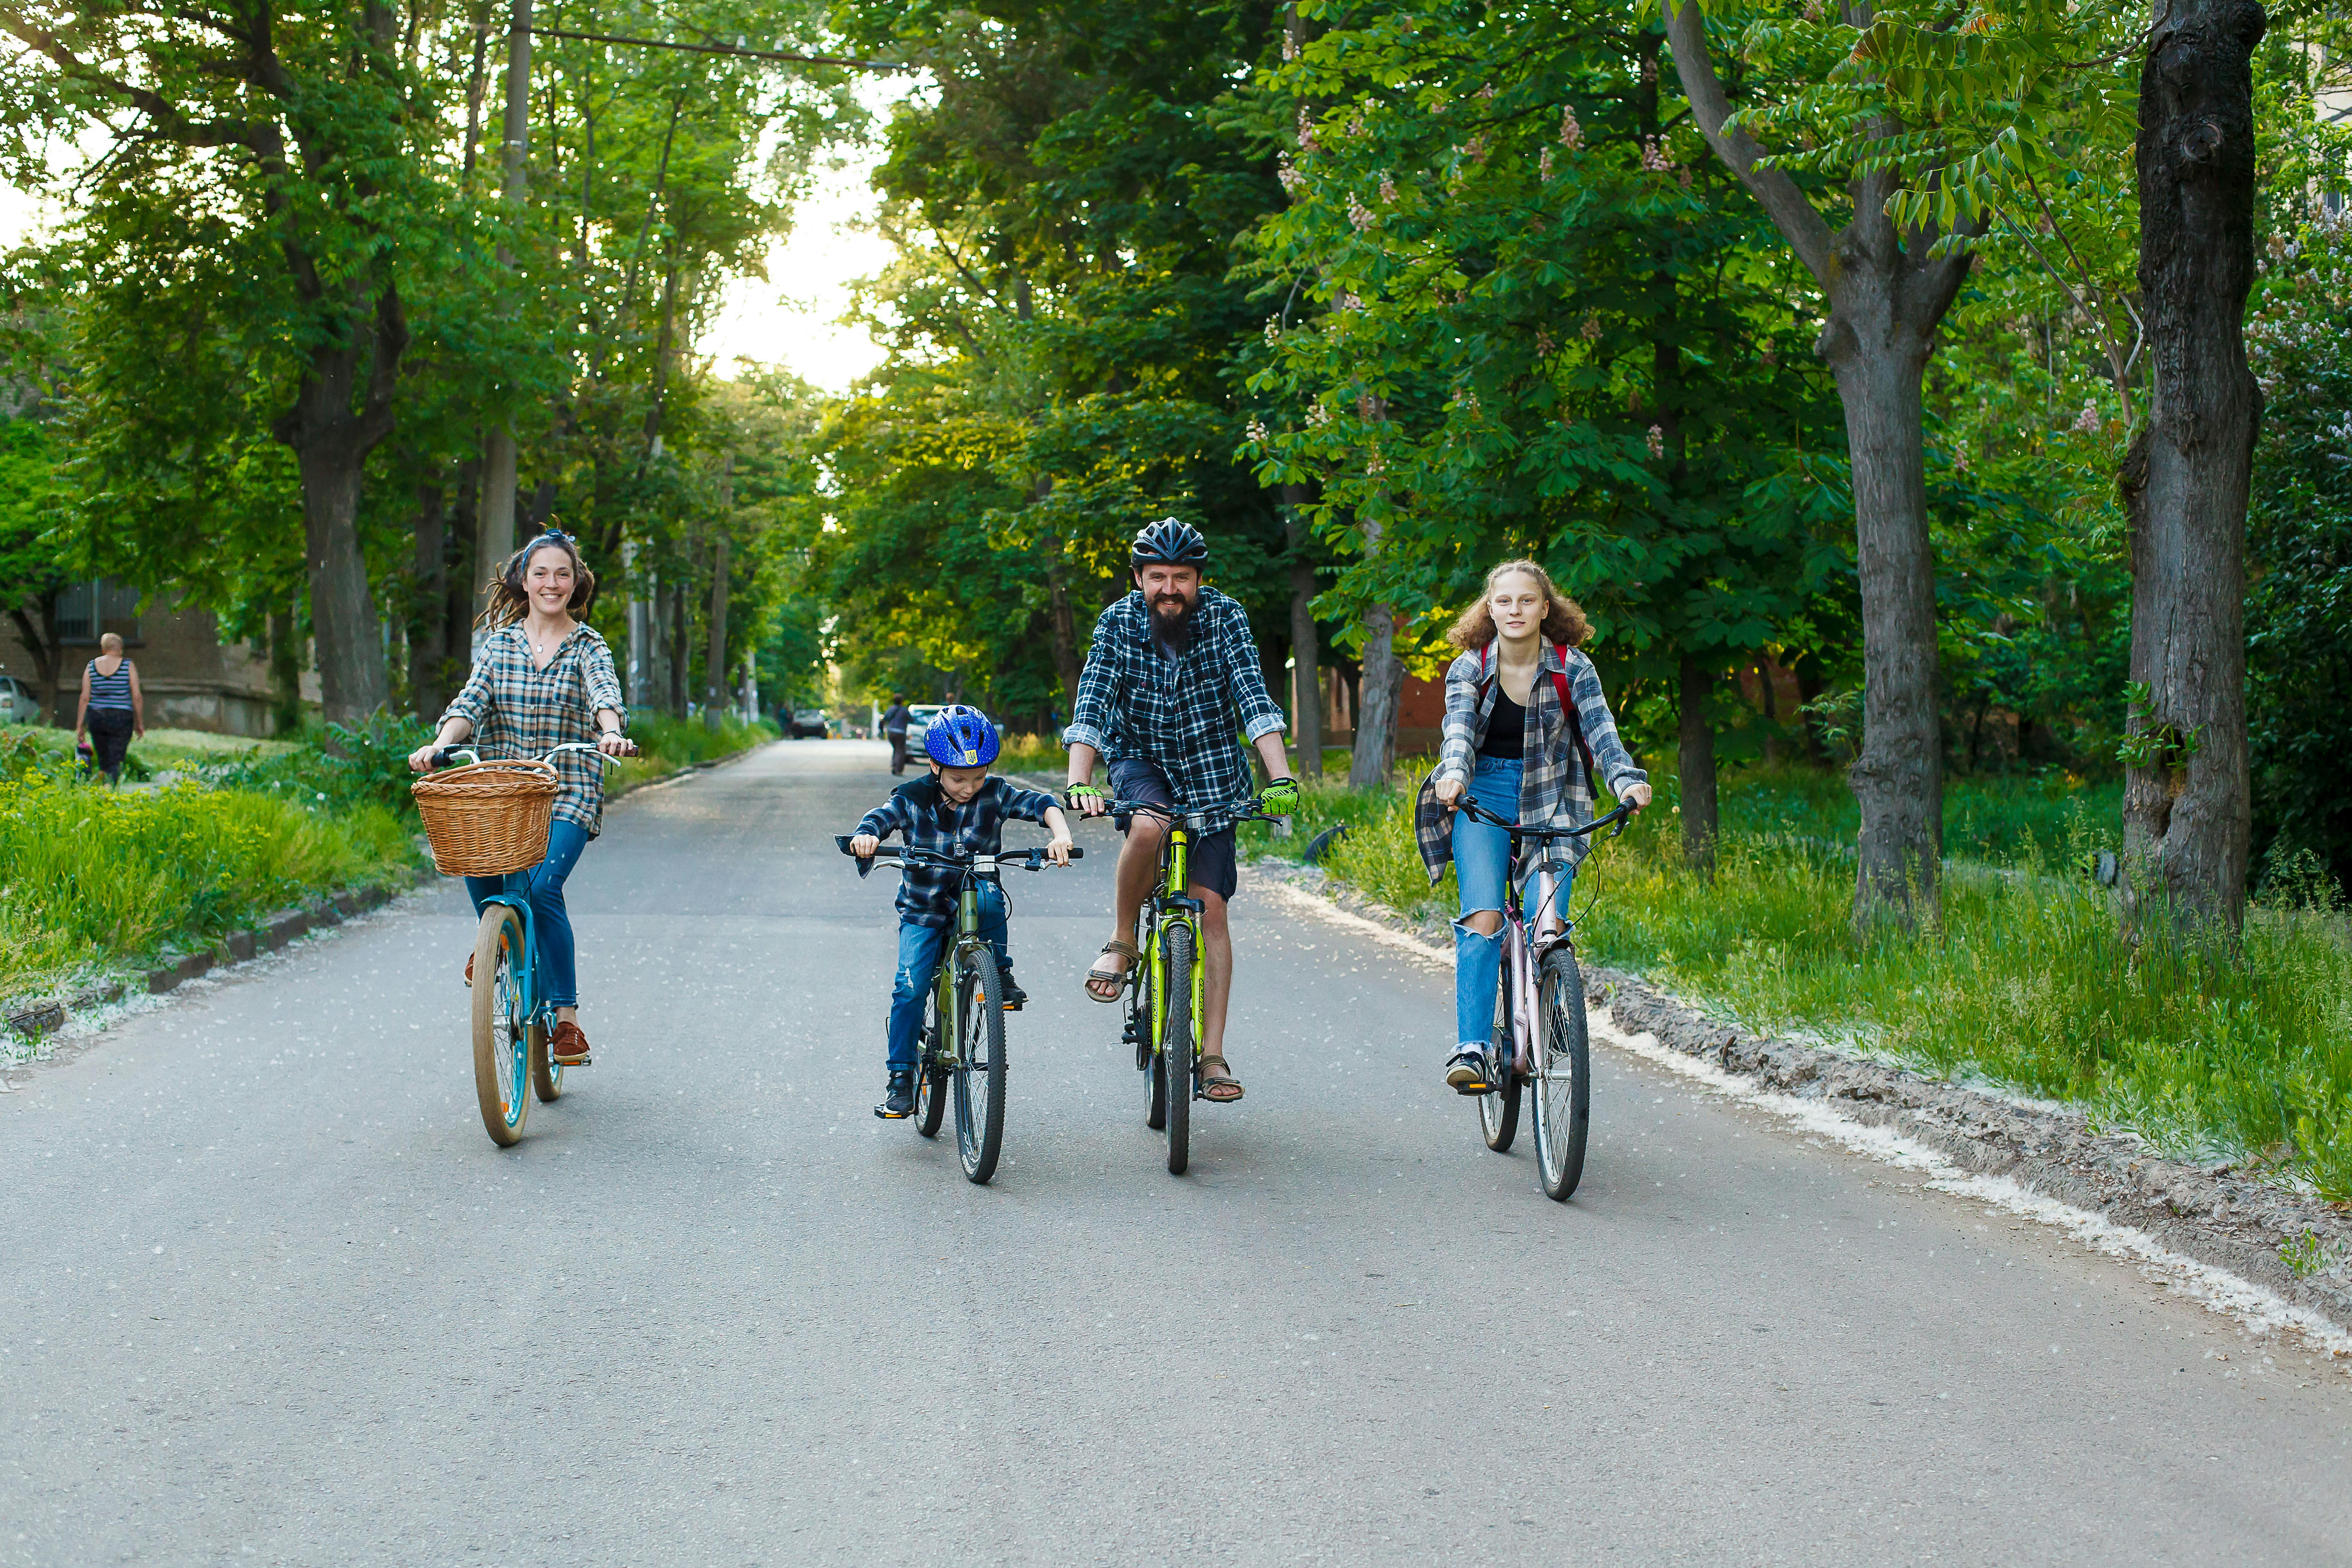 Ucraina. Roman e Yevhenia di Kryvyi Rih, che hanno adottato Yuliia (15) e Mark (8), durante un giro in bicicletta.